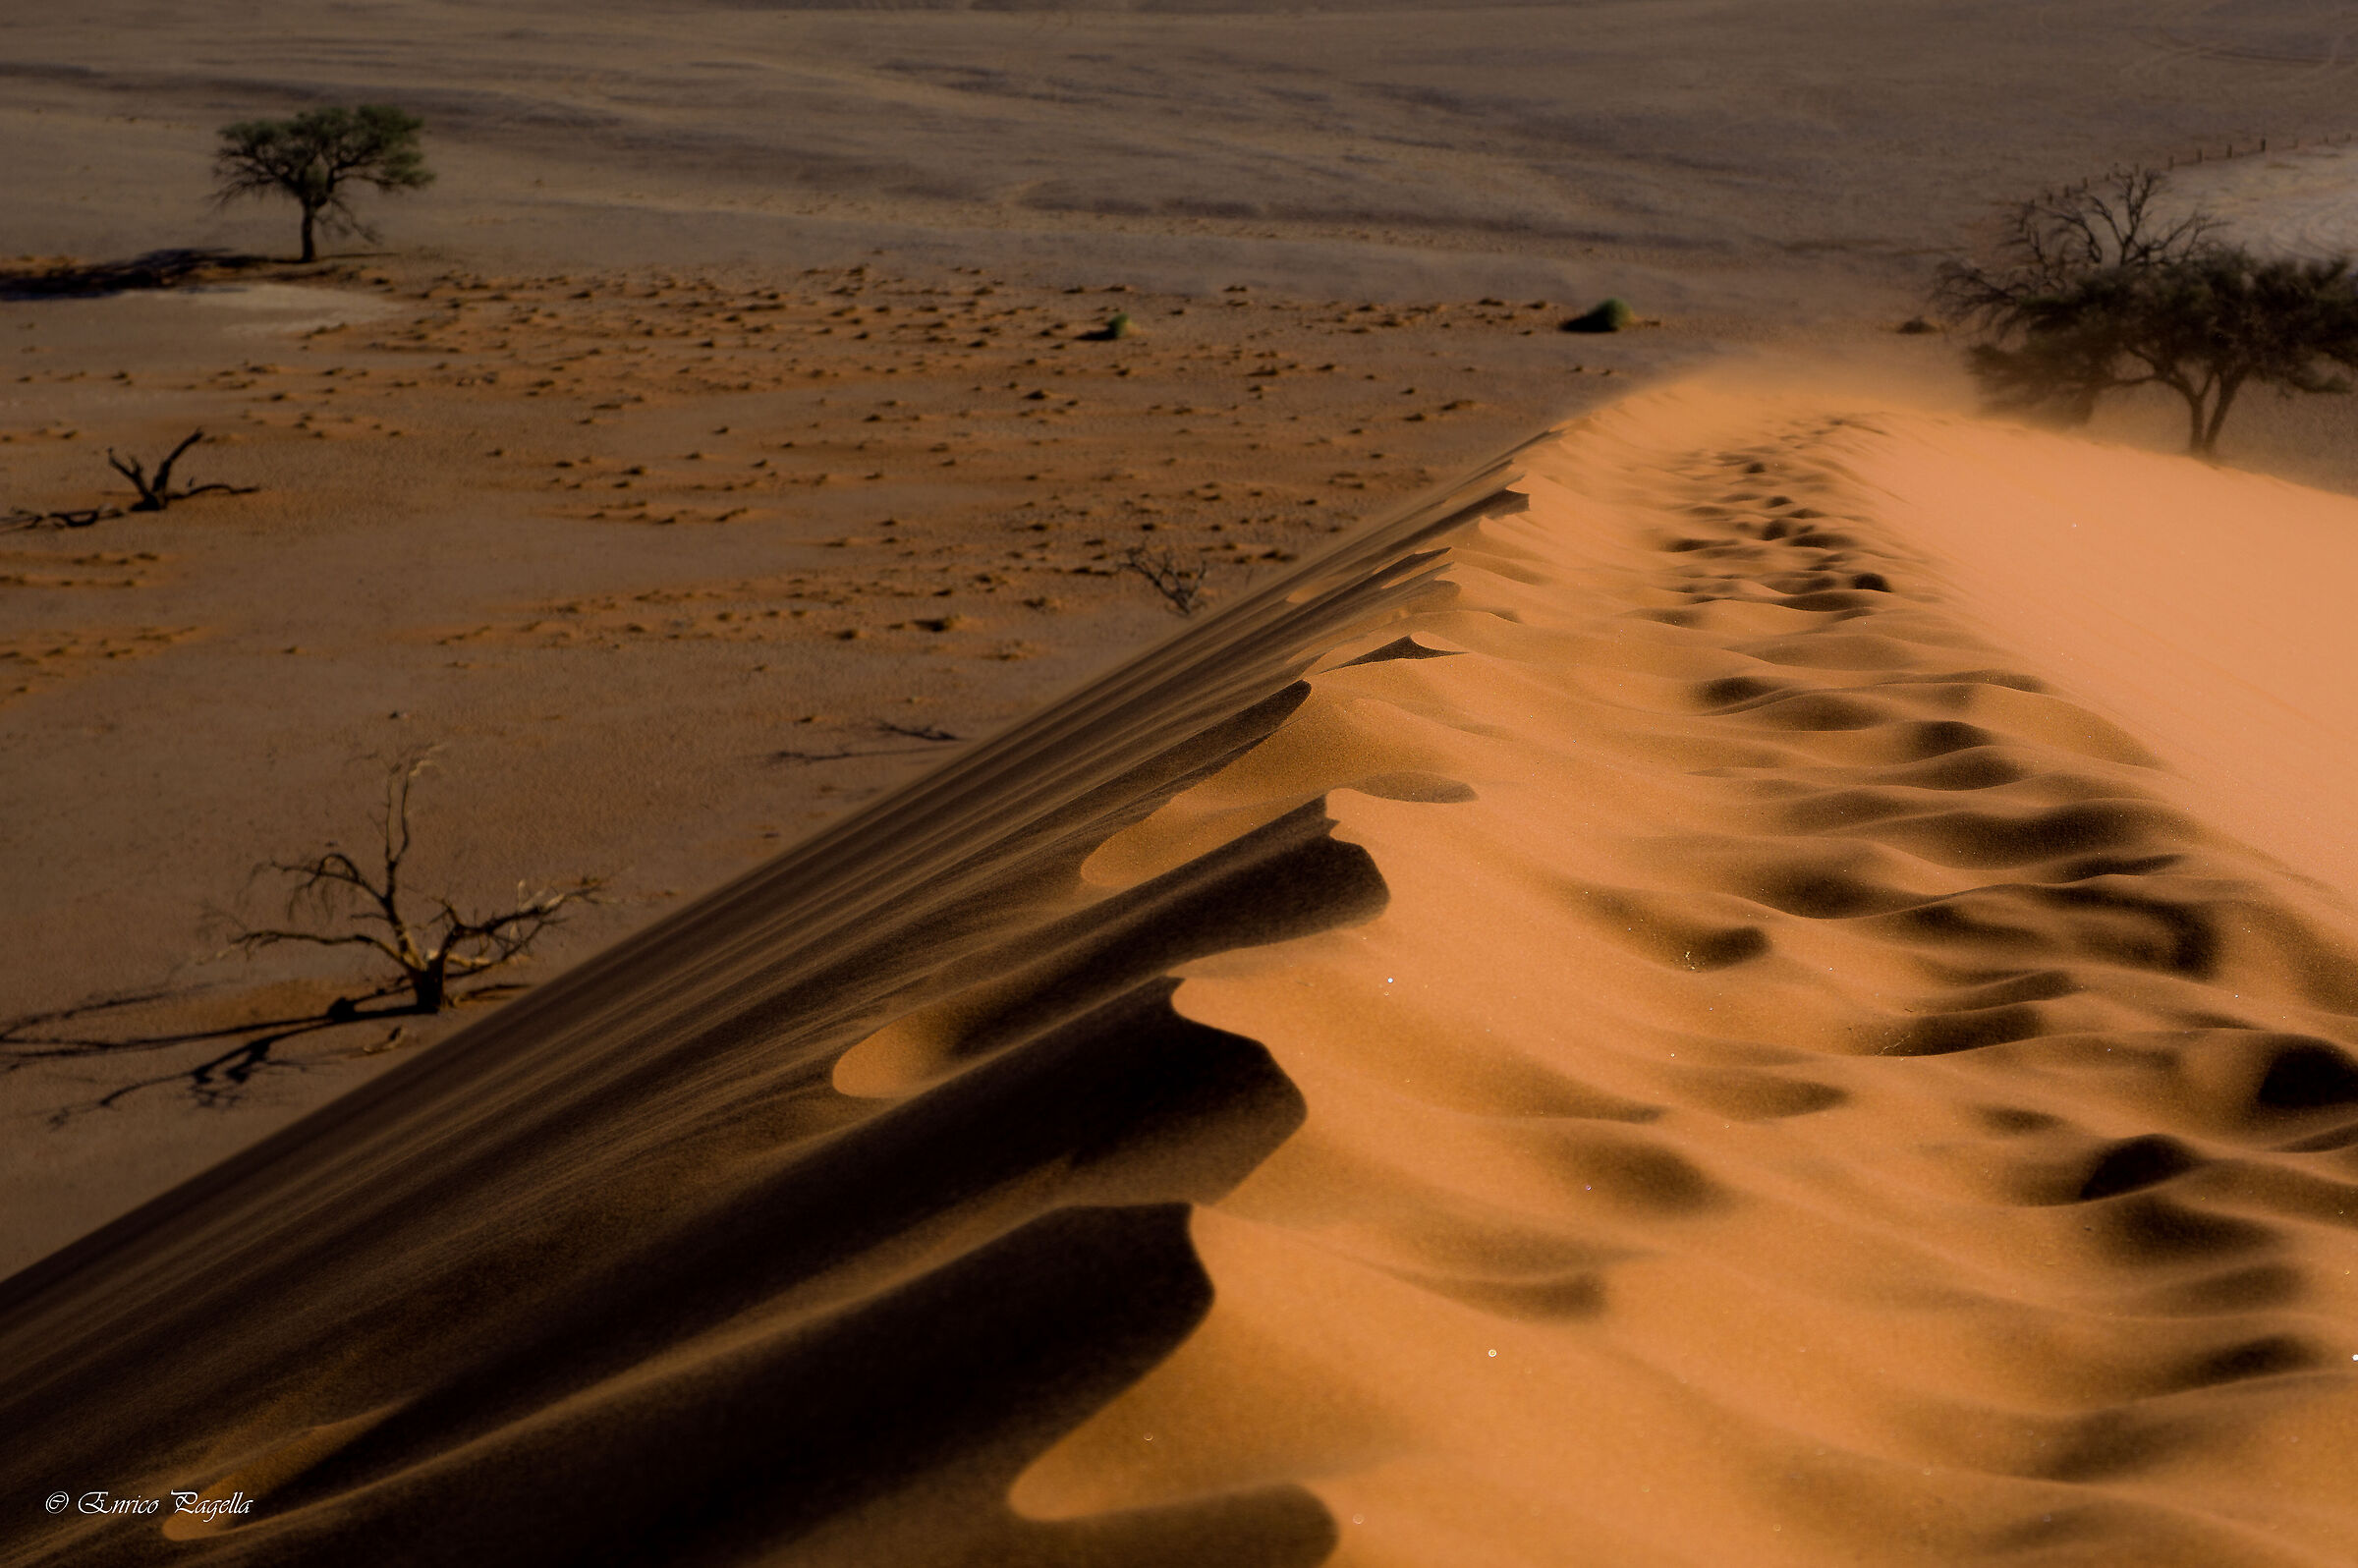 il deserto e la bellezza delle dune...